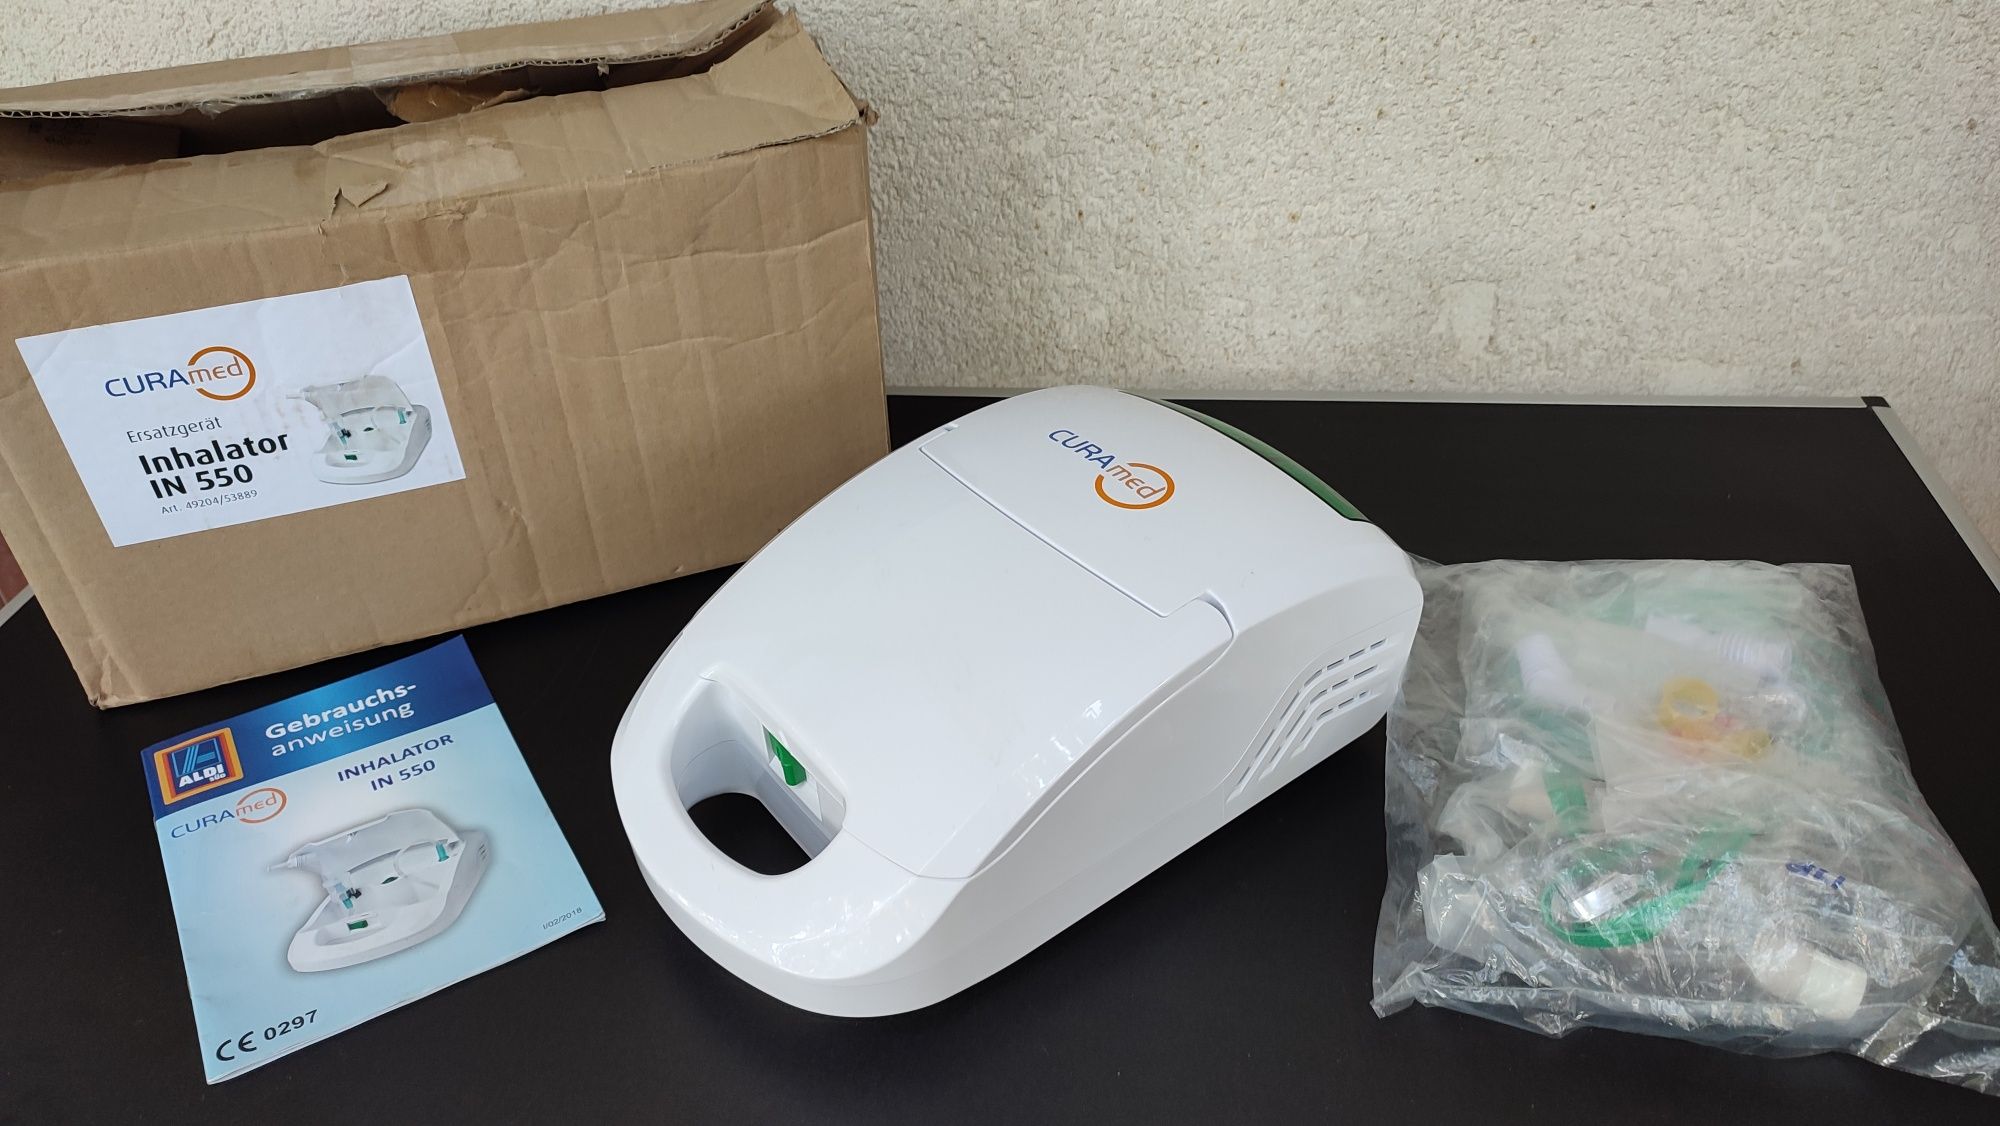 inhalator curamed in 550 nebulizator  alergii astm aerosoli inhalatii